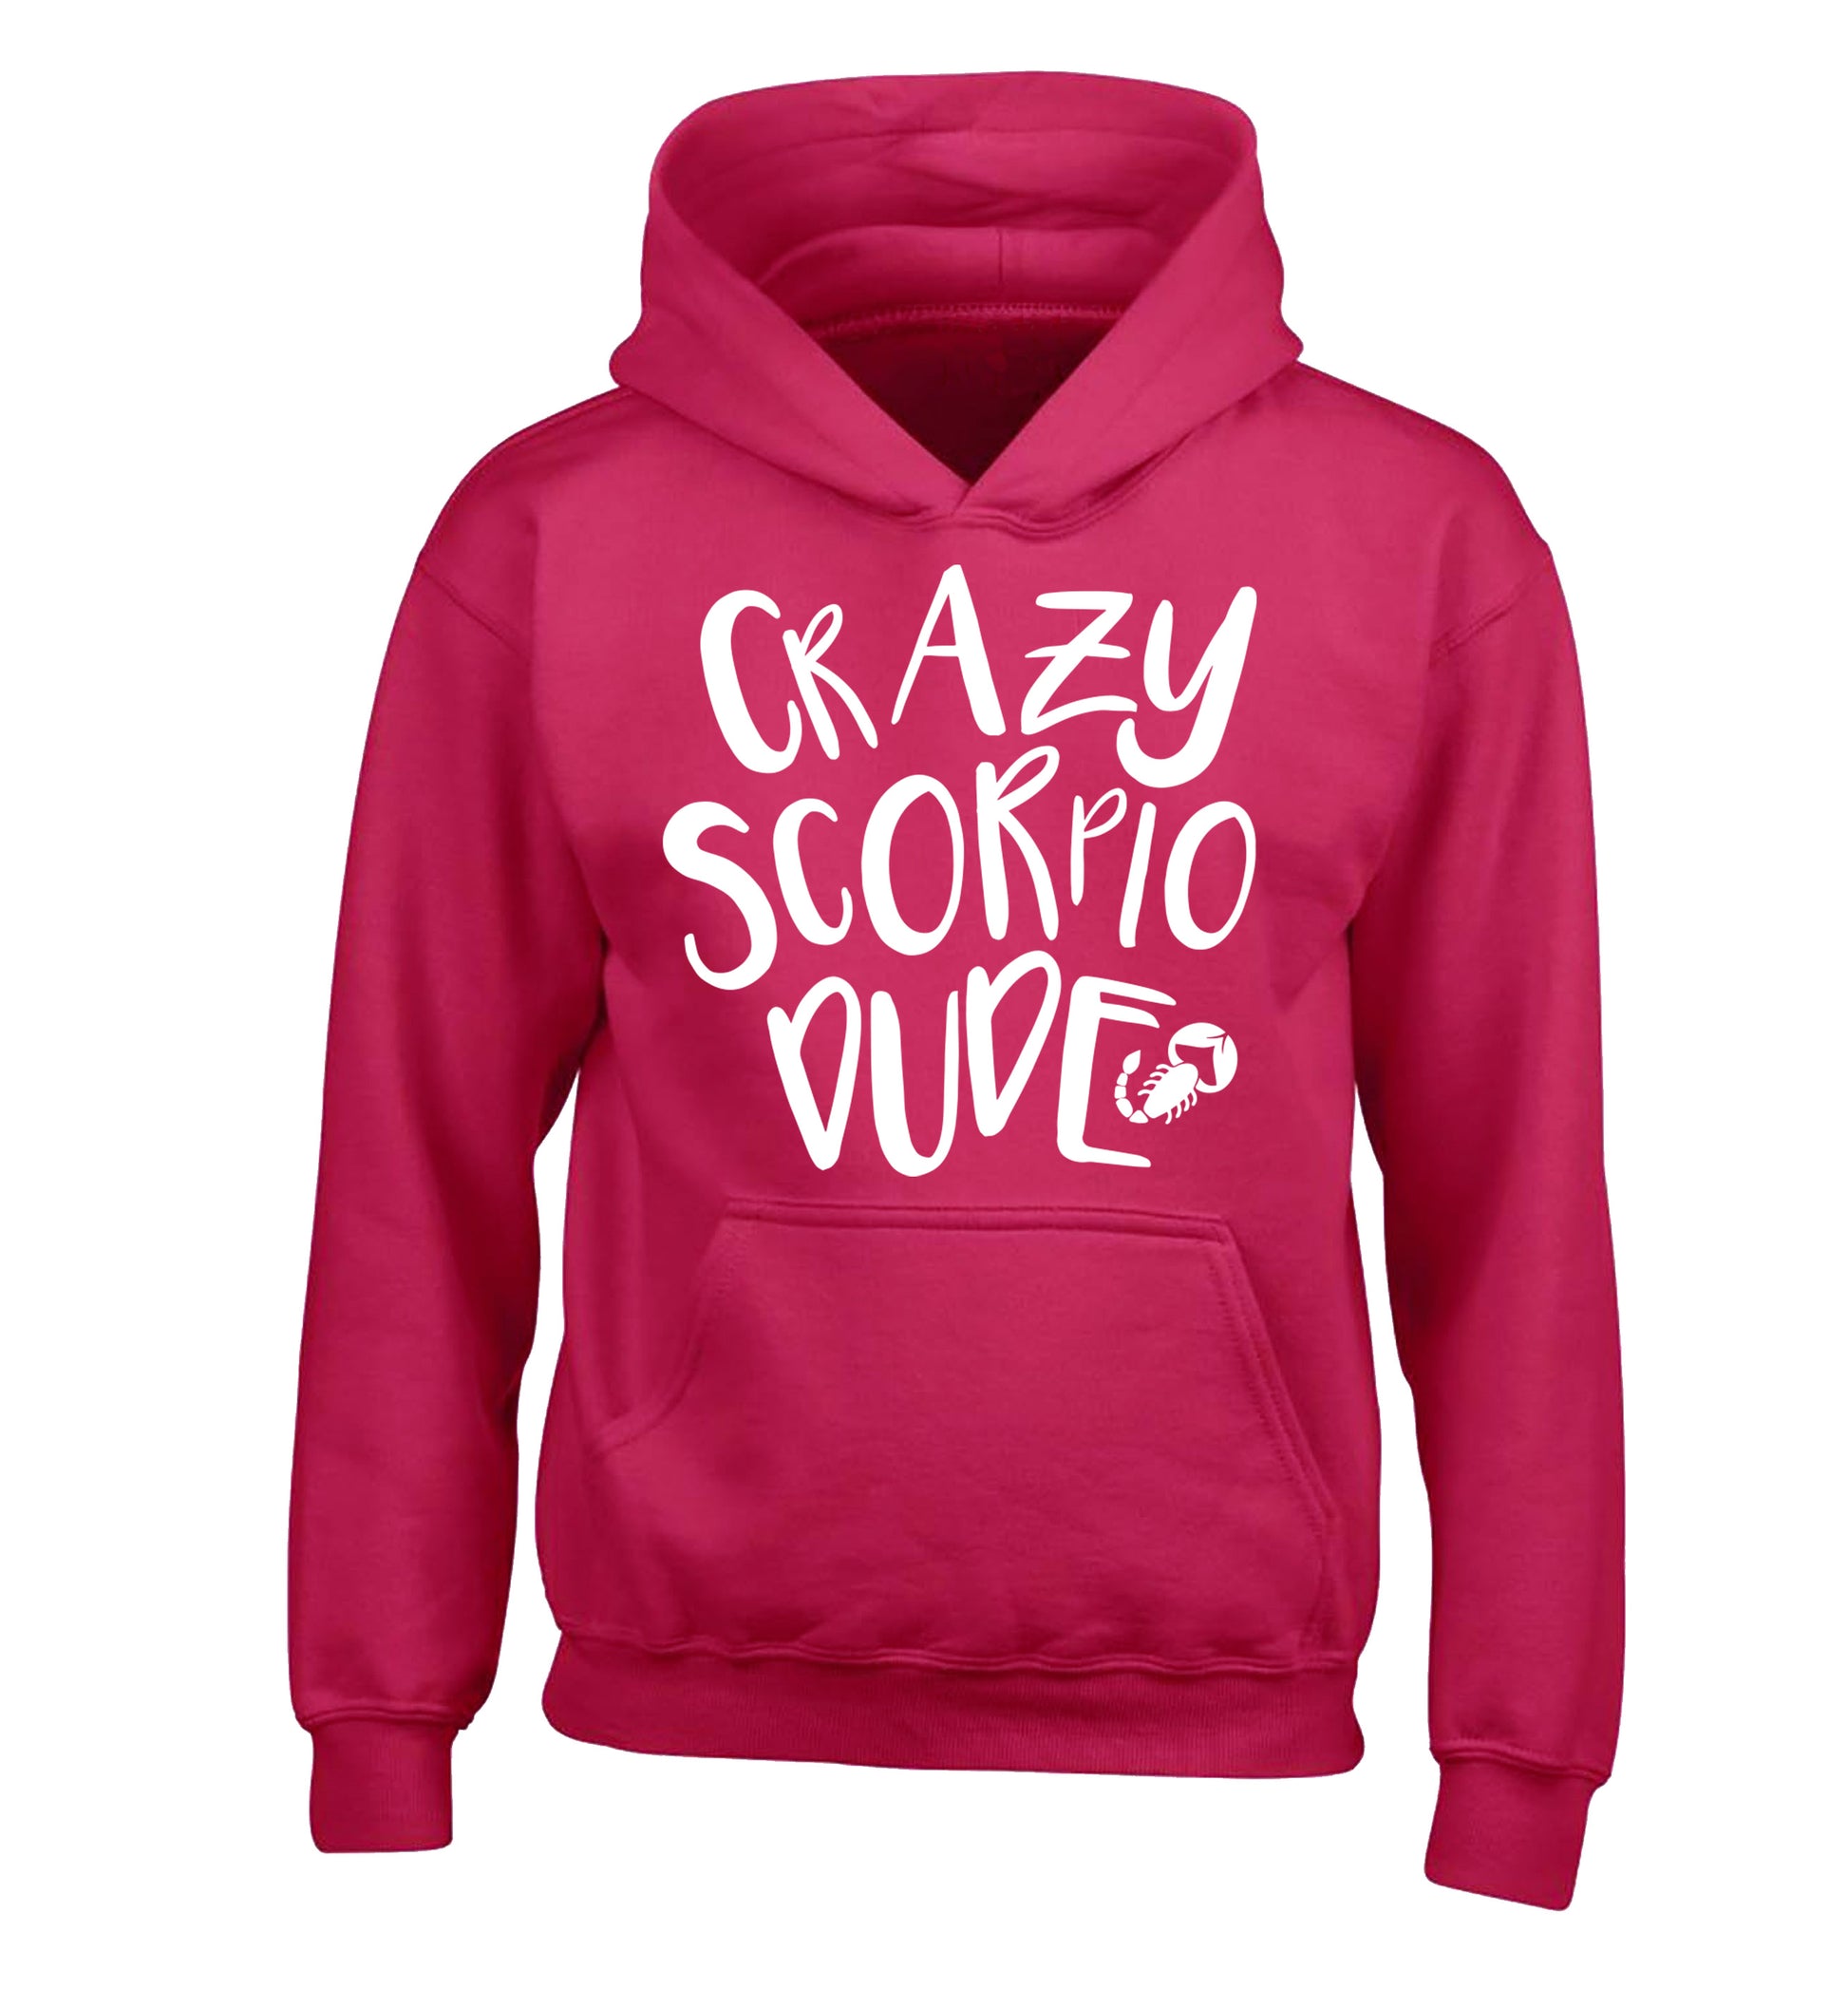 Crazy scorpio dude children's pink hoodie 12-13 Years